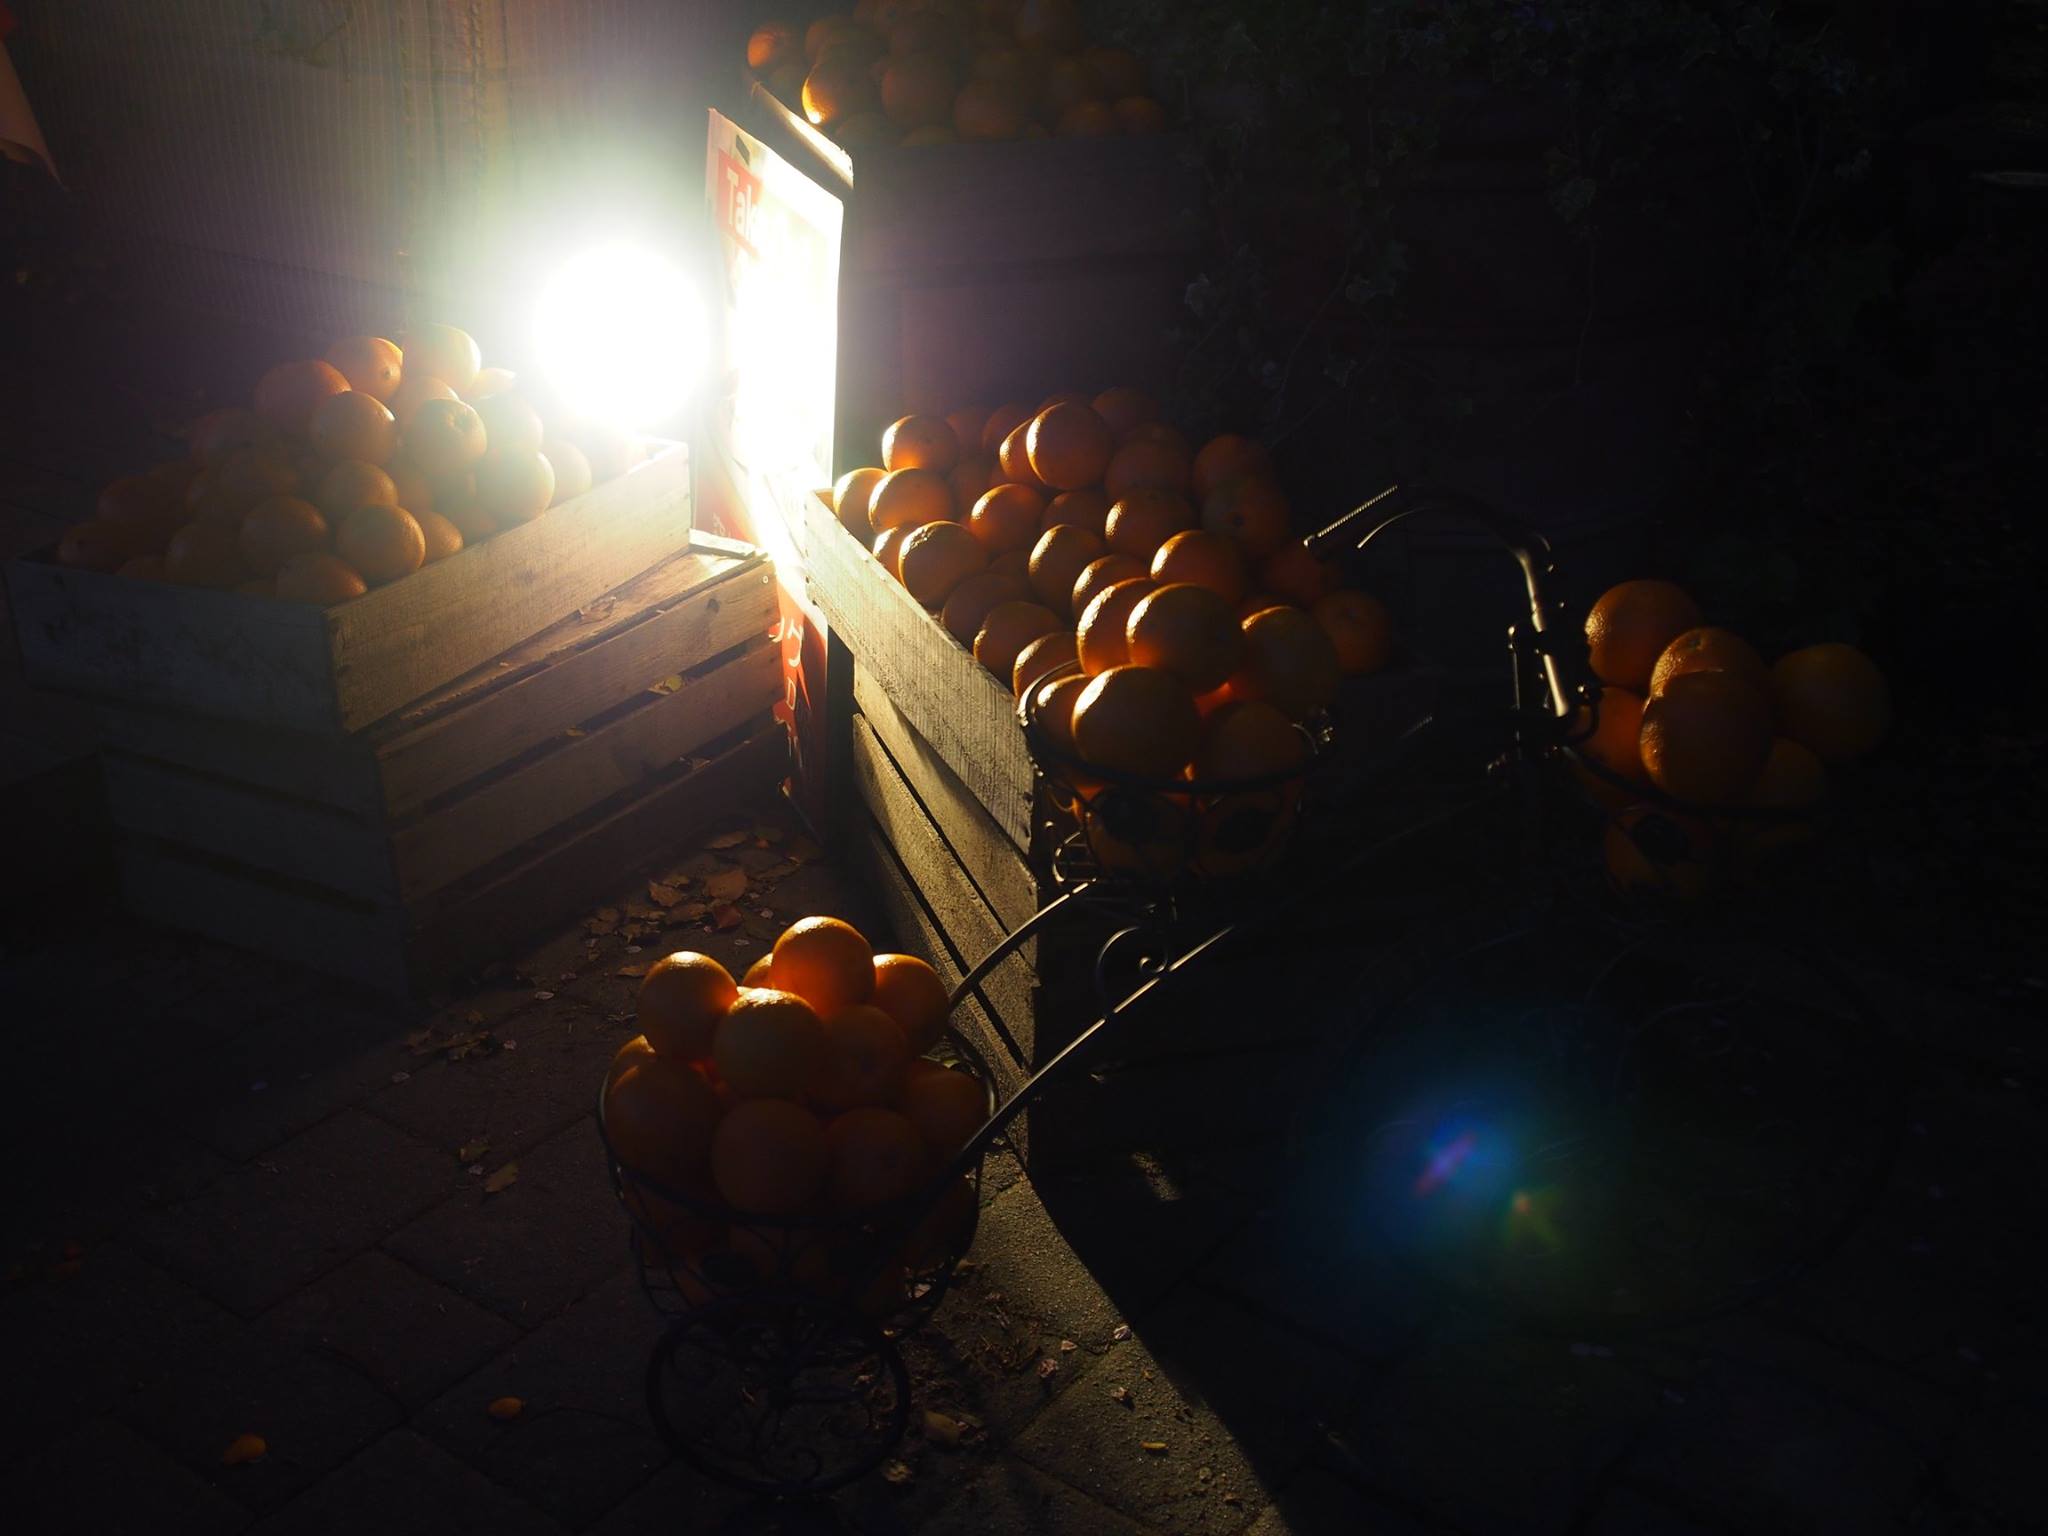 crates of oranges hiroshima